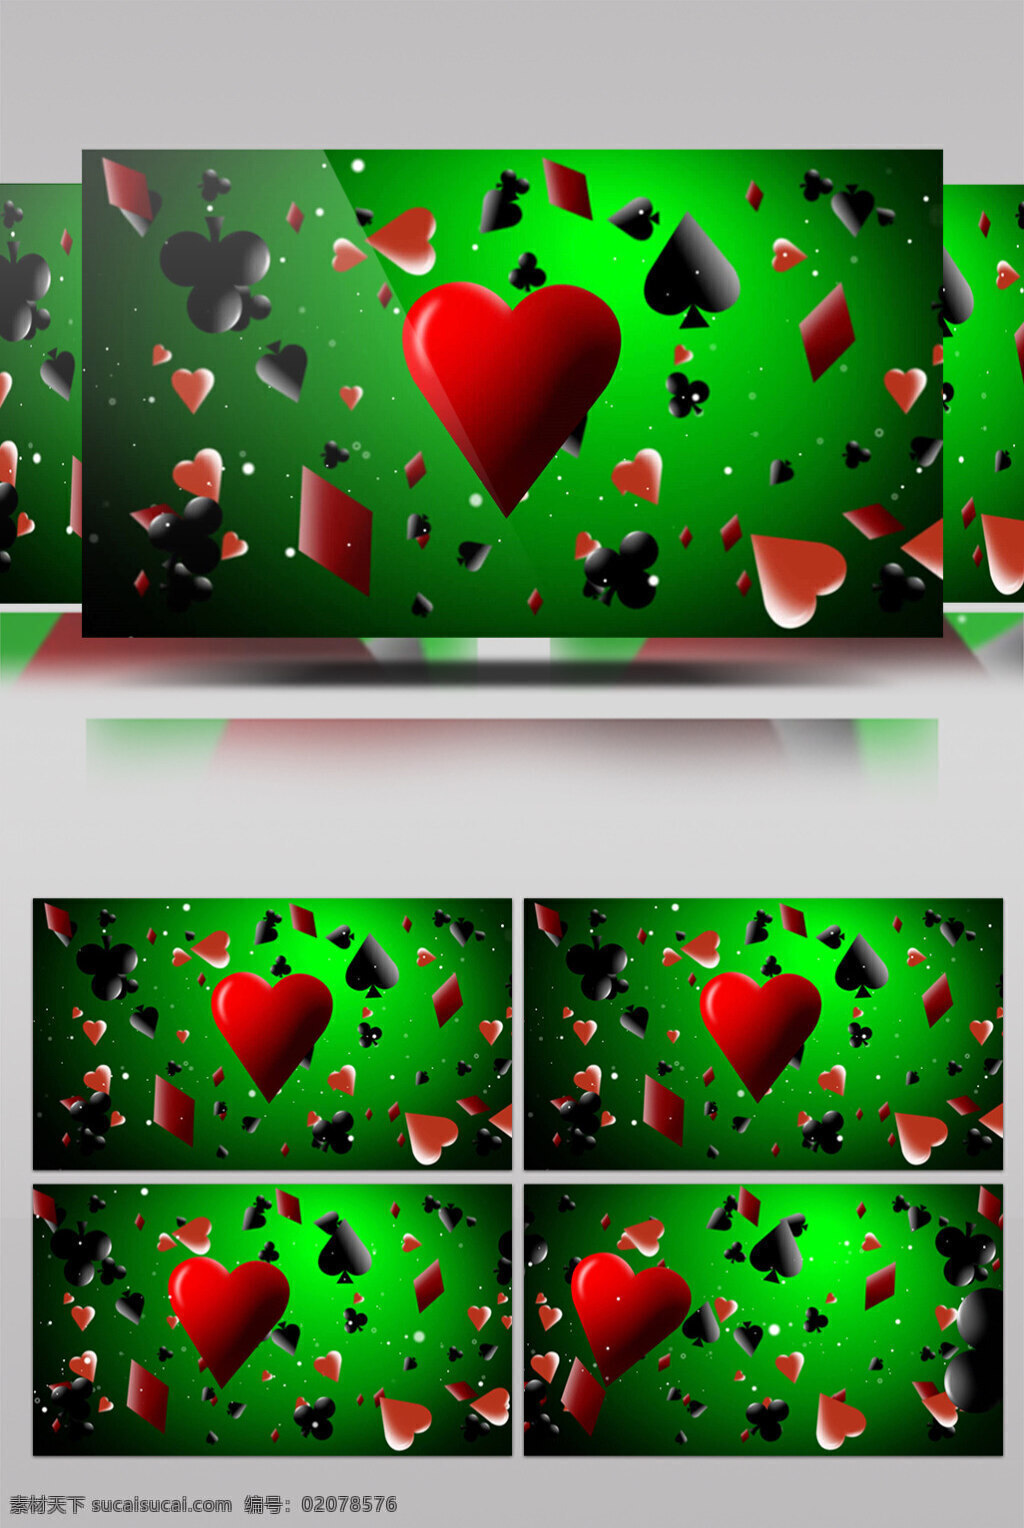 爱心 形状 视频 红色爱心 浪漫表白 唯美背景素材 生活实用 节目使用 实用背景素材